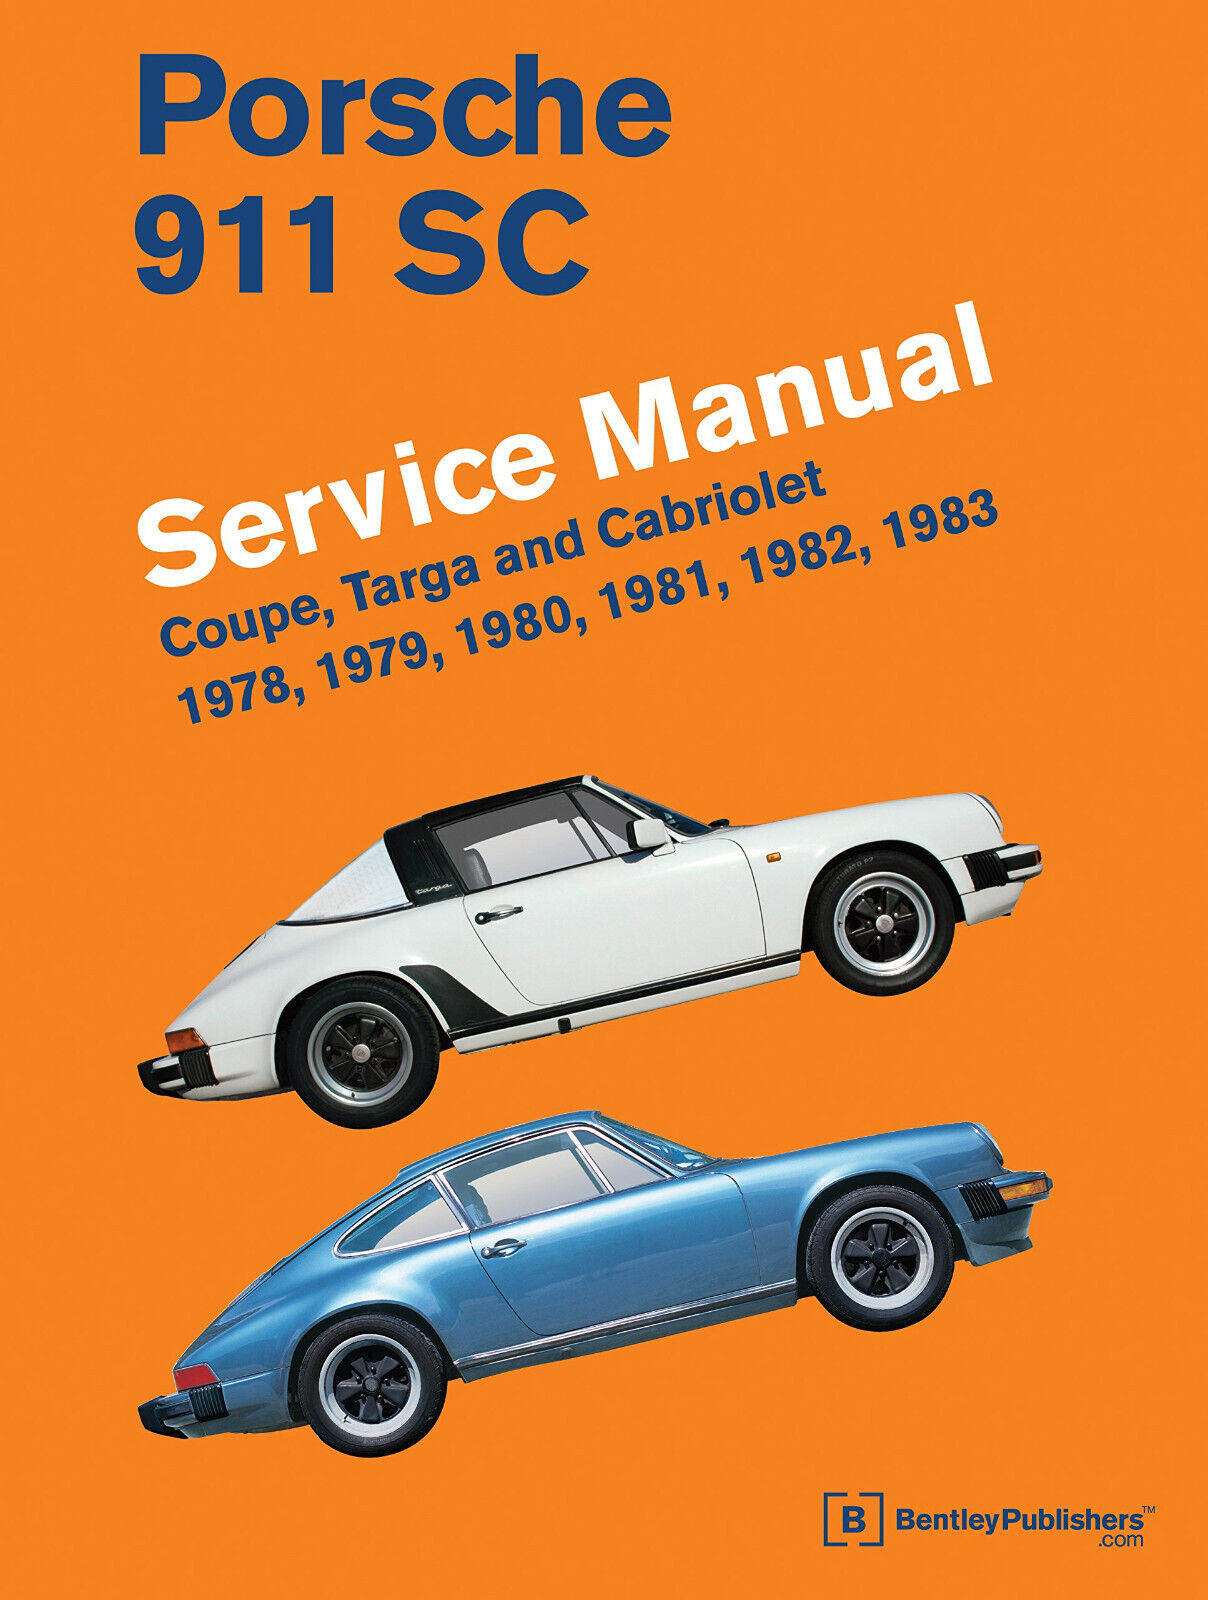 Porsche 911 SC Service Manual - Bentley Publishers -  ROBERT BENTLEY INC, 2012